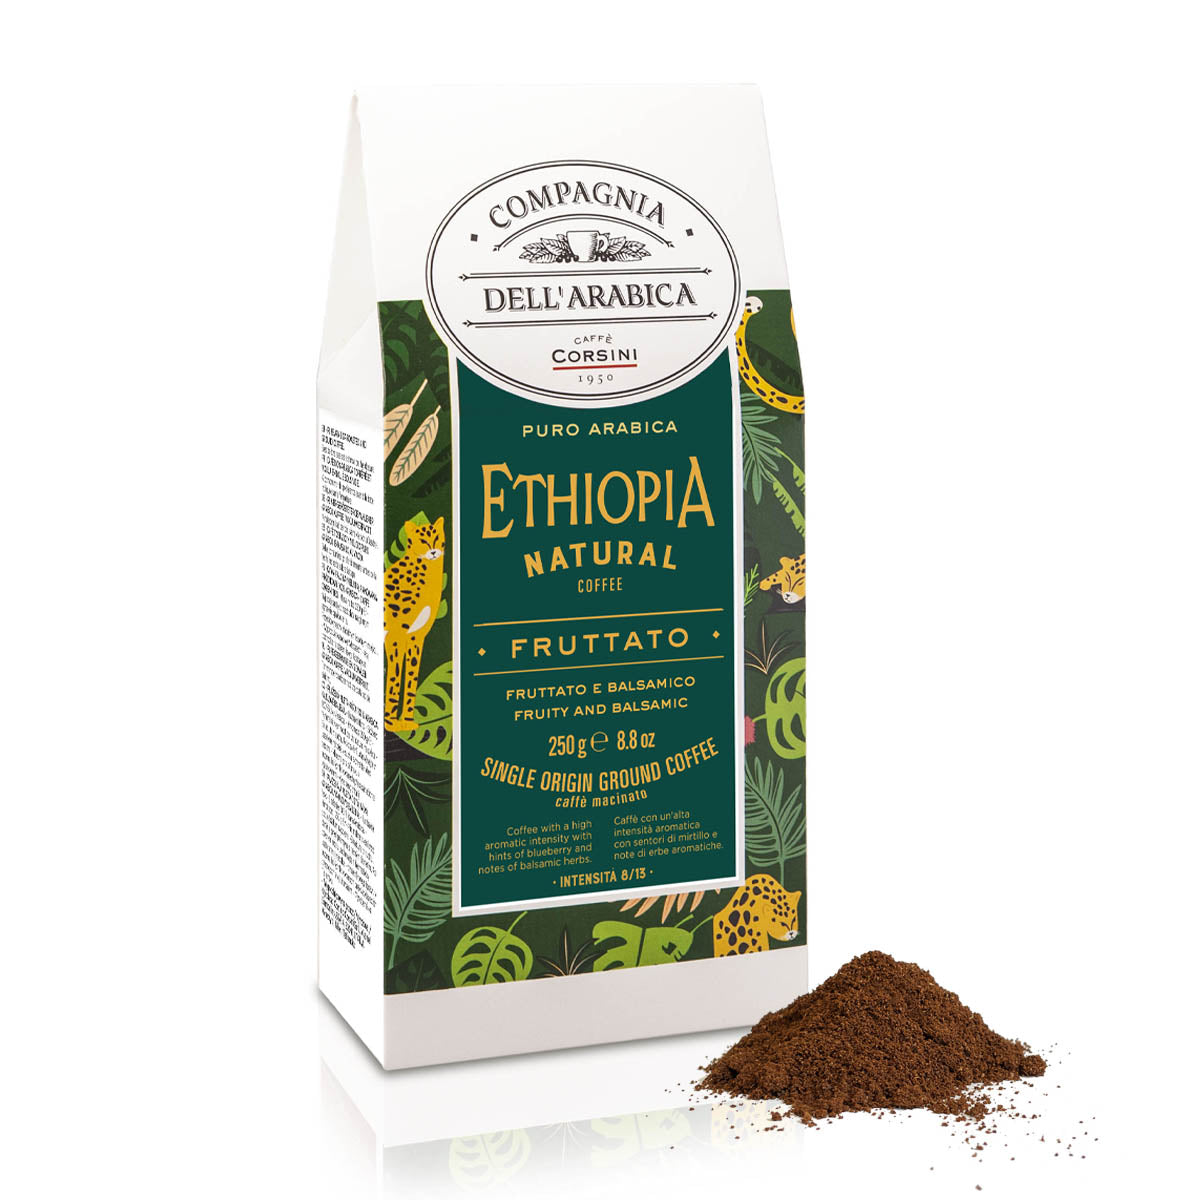 Caffè macinato | Ethiopia Natural Coffee | 100% Arabica | 250g | Cartone con 12 confezioni